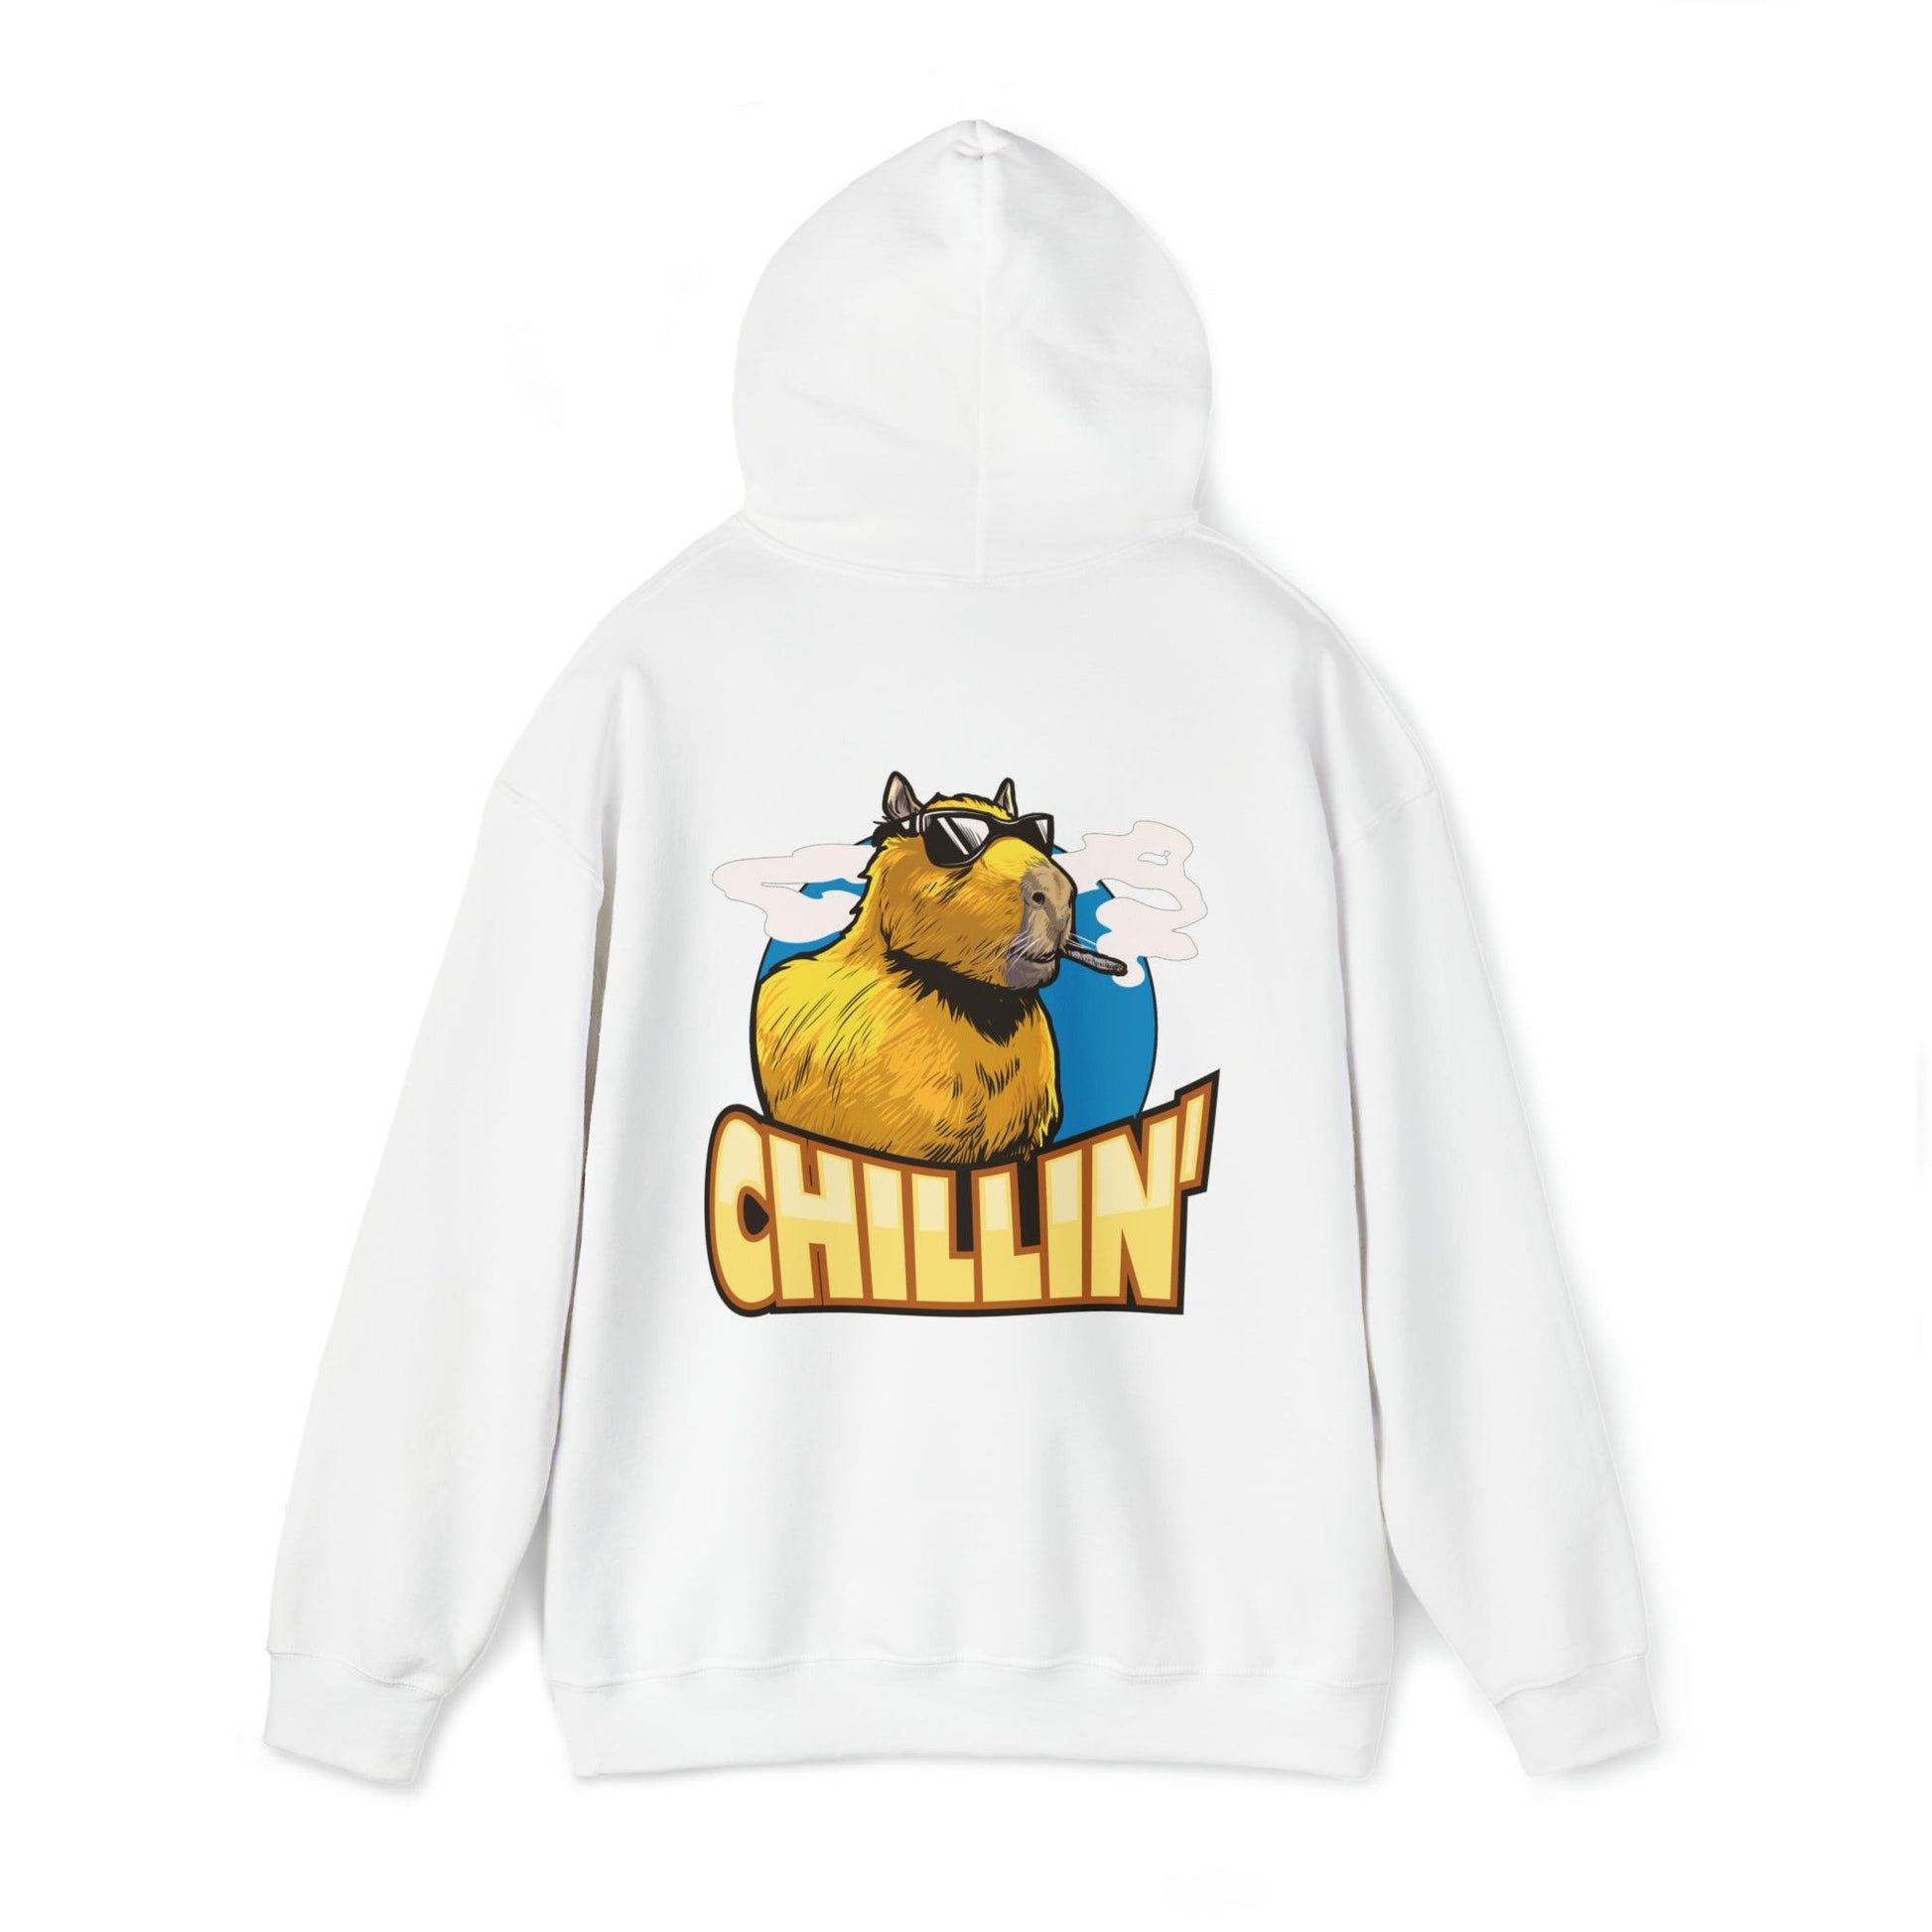 Capybara chillin - Unisex Heavy Blend Hooded Sweatshirt - Shaneinvasion